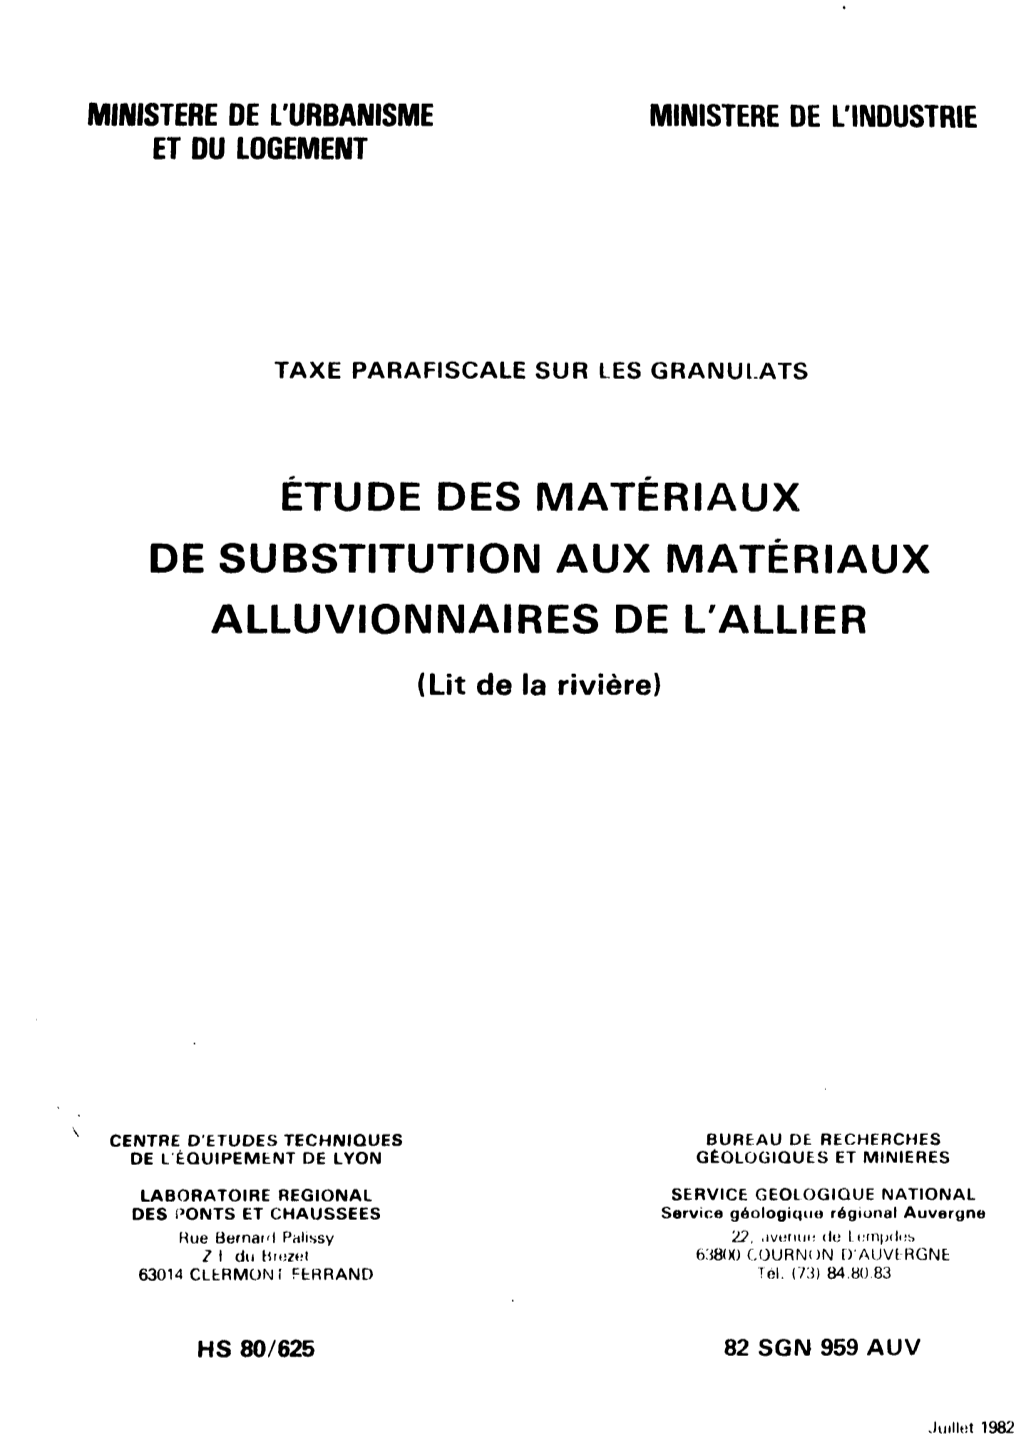 ÉTUDE DES MATÉRIAUX DE SUBSTITUTION AUX MATÉRIAUX ALLUVIONNAIRES DE L'allier (Lit De La Rivière)